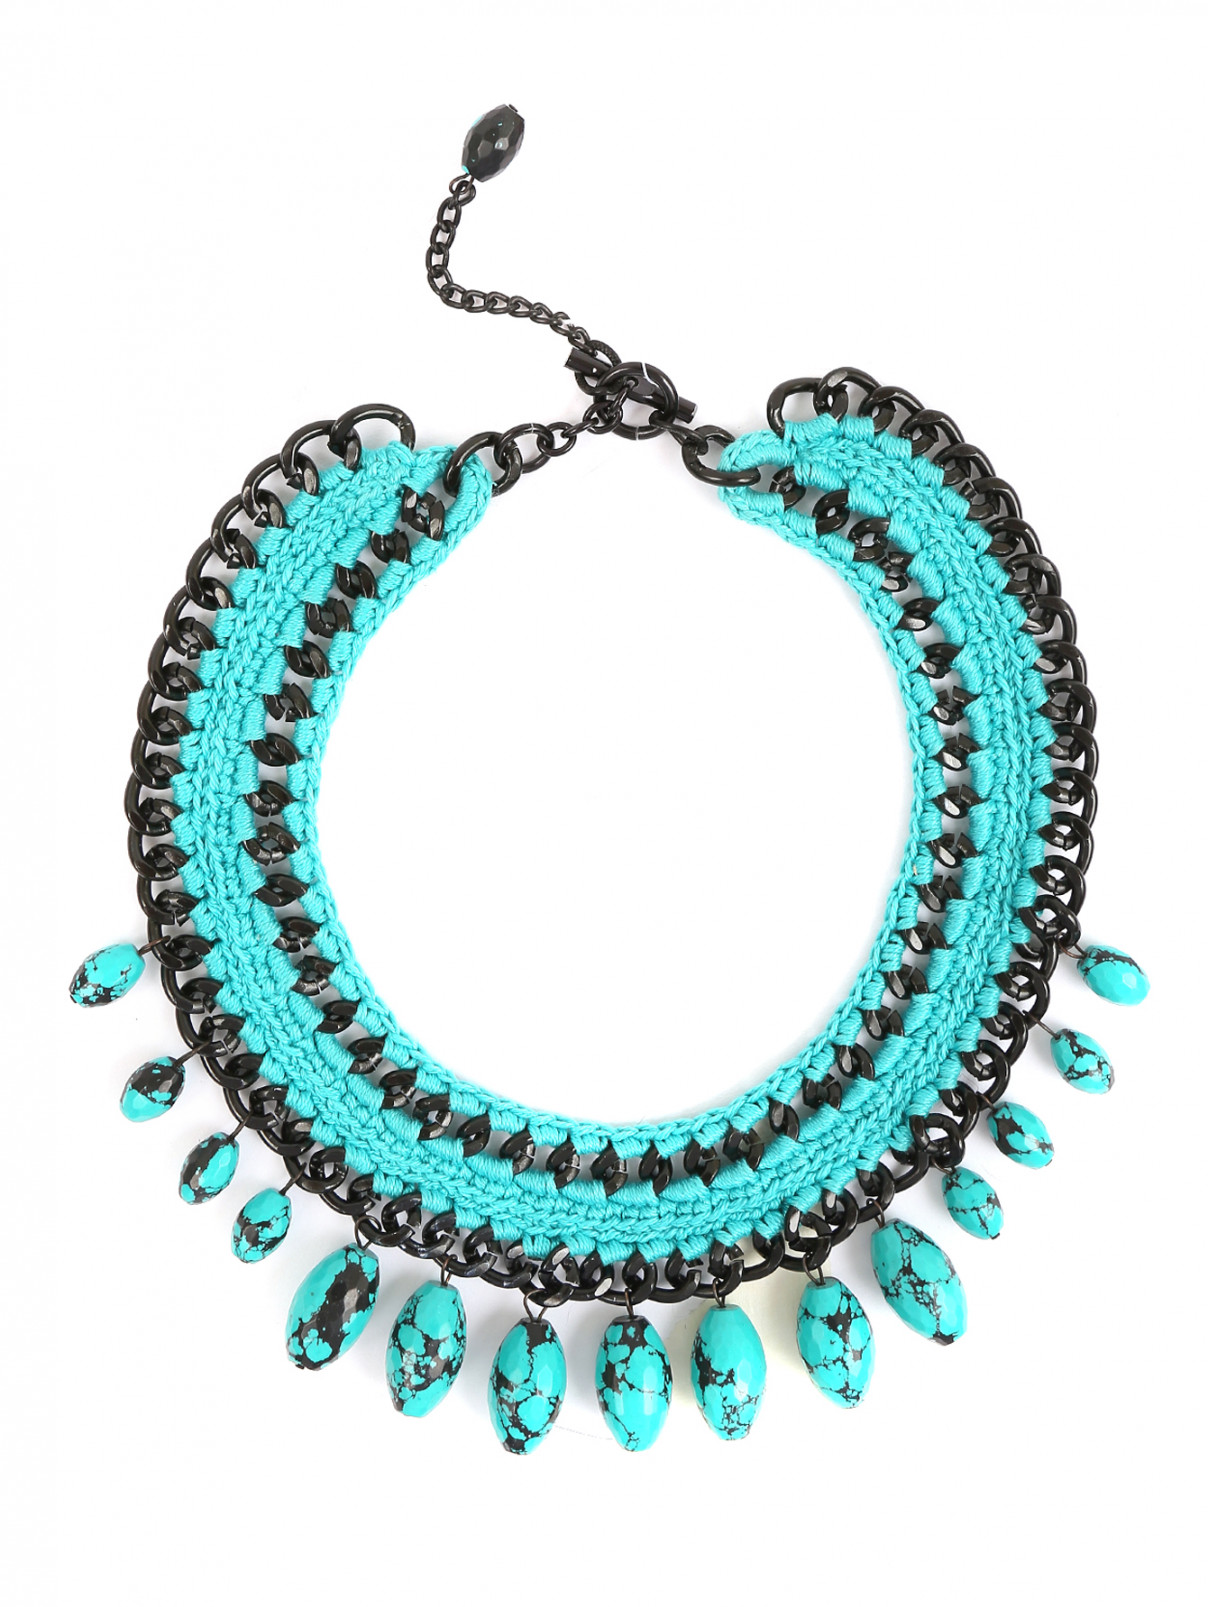 Ожерелье на цепи с отделкой из нитей и камней Inga Kazumyan  –  Общий вид  – Цвет:  Синий